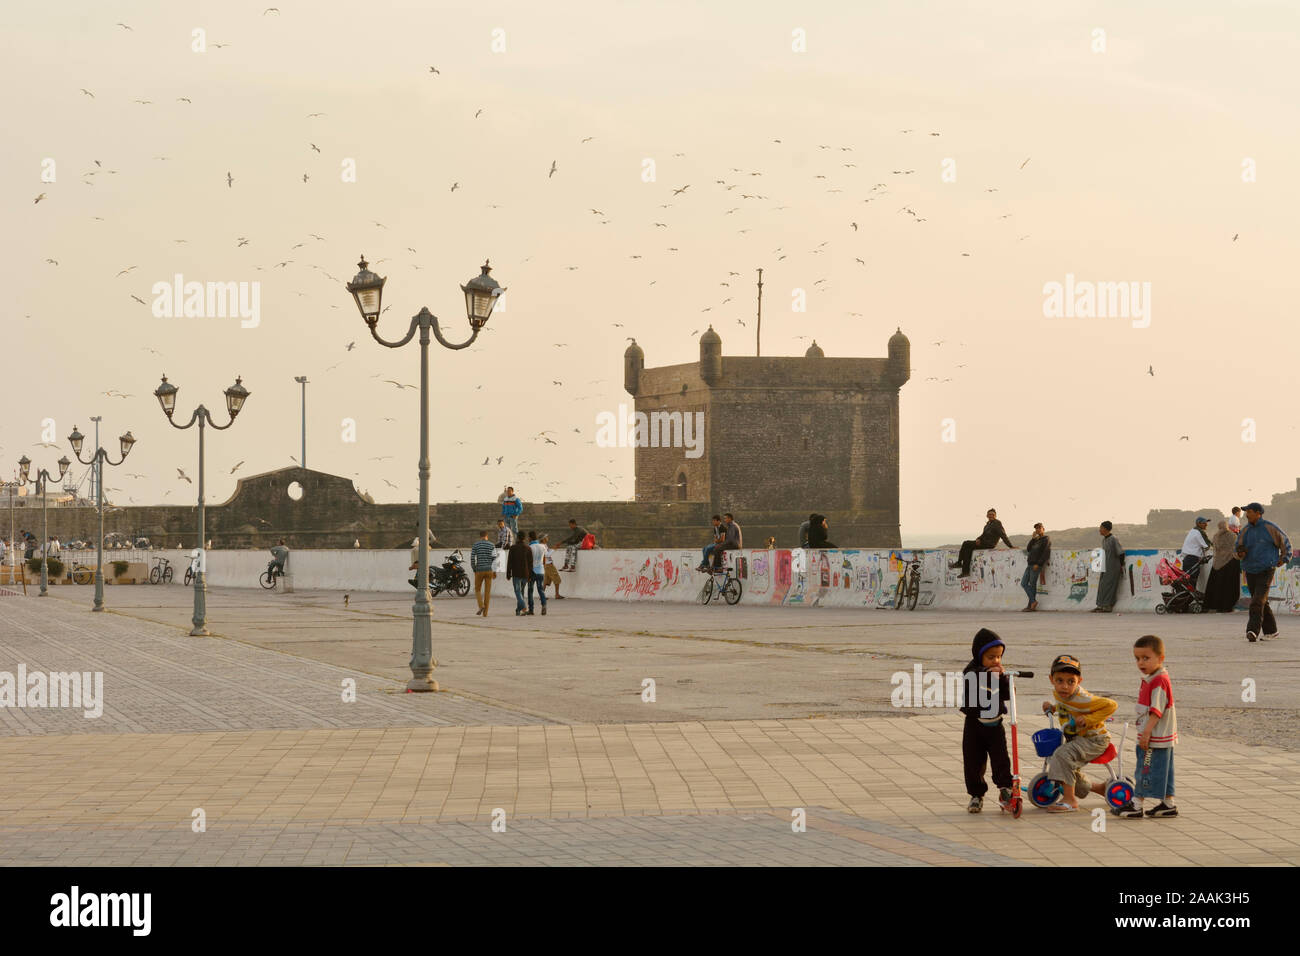 Place Moulay Hassan, Essaouira, Site du patrimoine mondial de l'Unesco. Maroc Banque D'Images